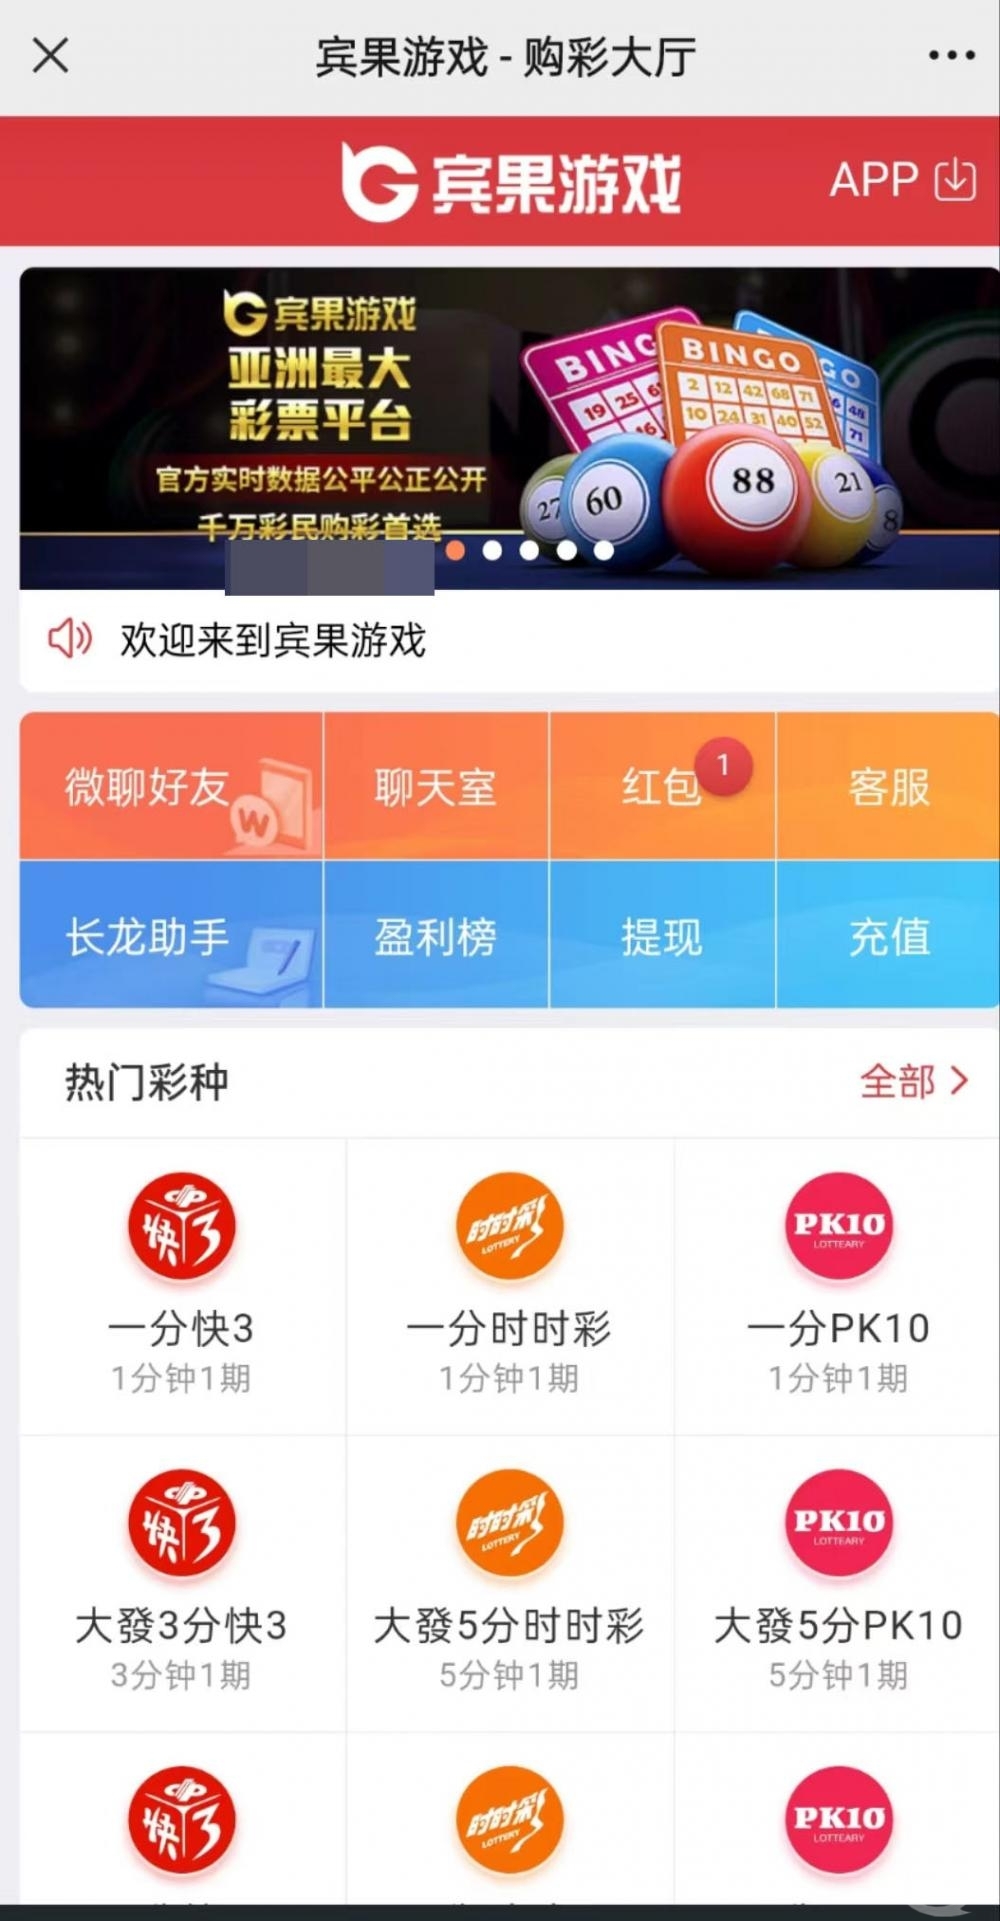 ▲点击郑州政协微信公号后跳转赌博网站。